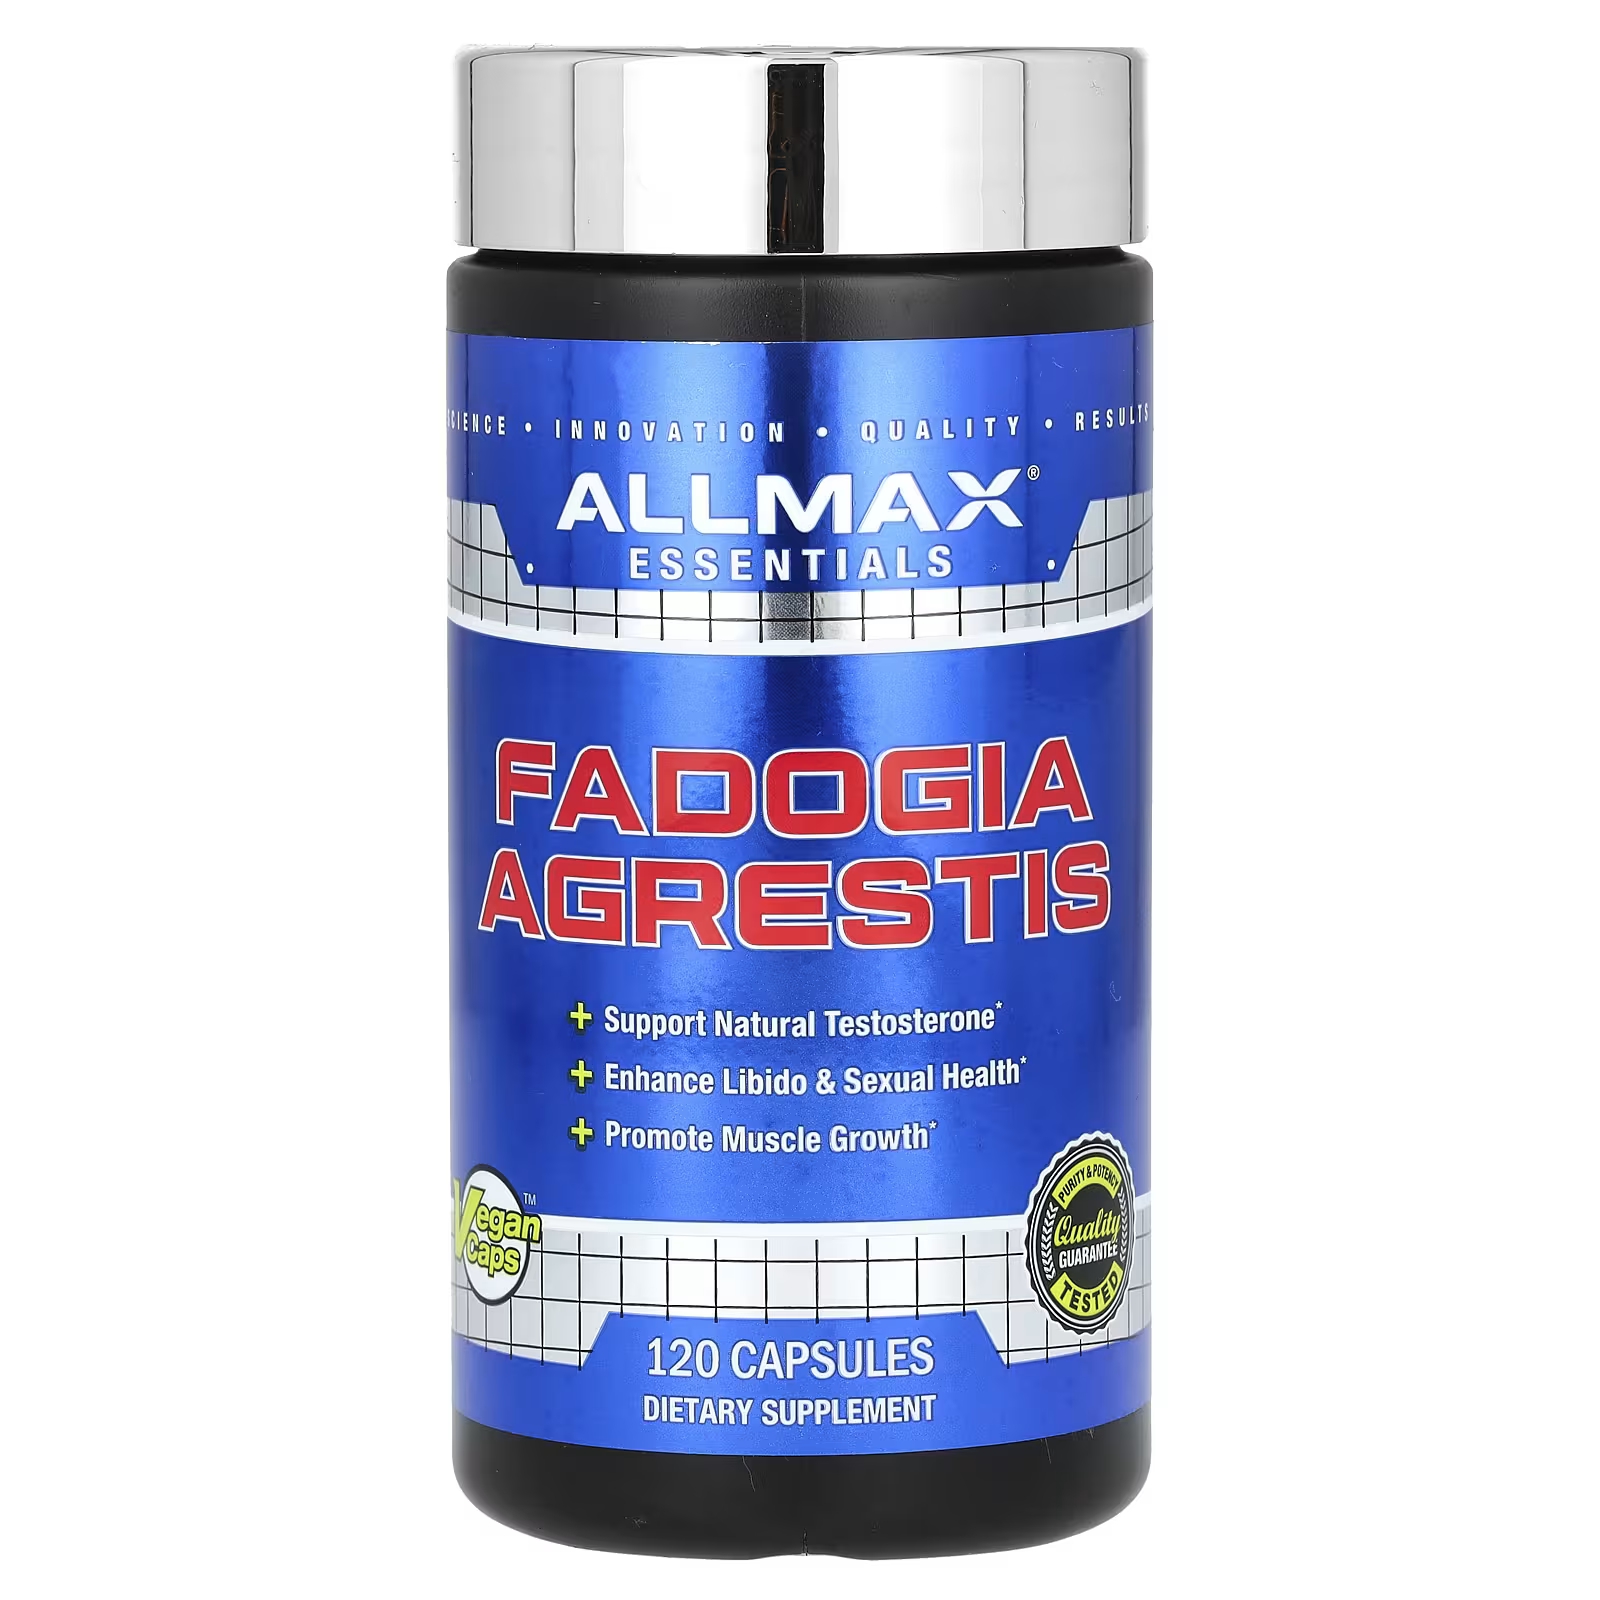 Пищевая добавка AllMax Essentials Fadogia Agrestis, 120 капсул пищевая добавка evlution nutrition fadogia agrestis 30 капсул